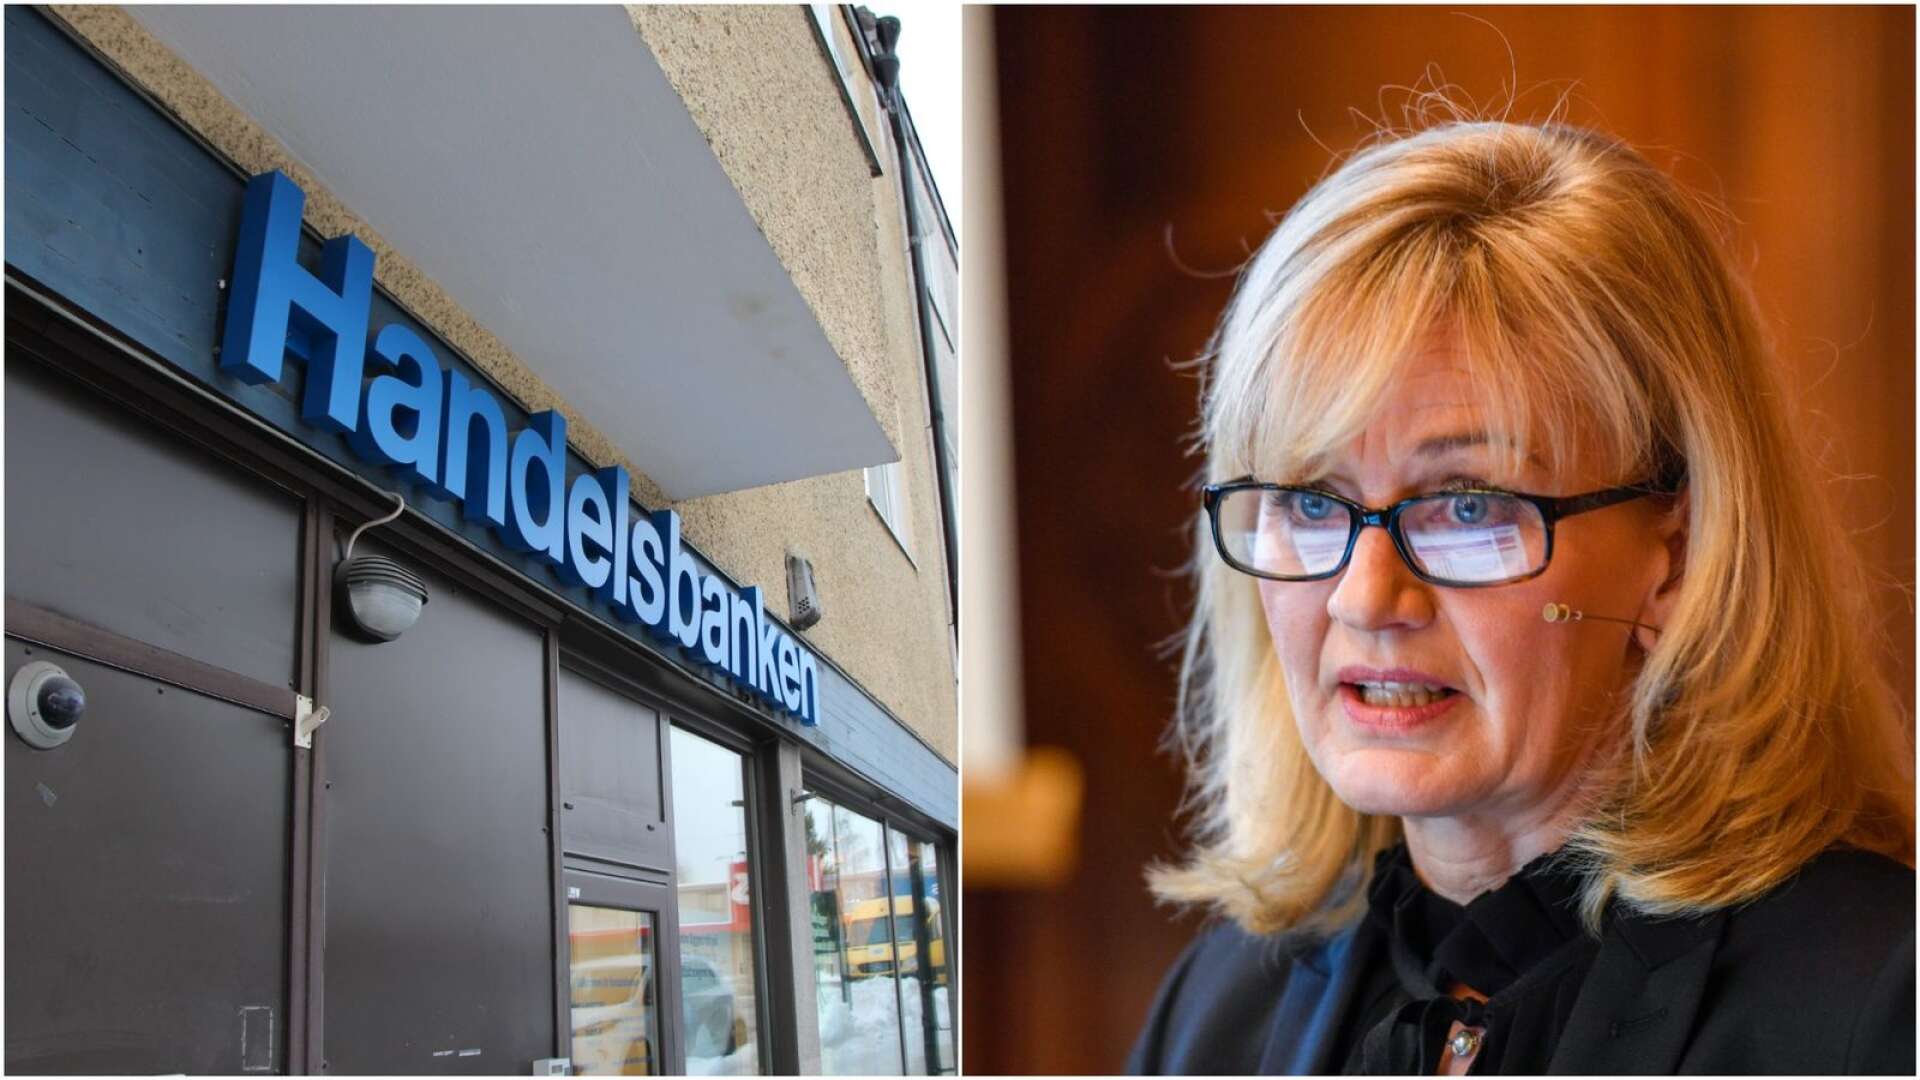 180 bankkontor läggs ner - oklart om Värmland drabbas